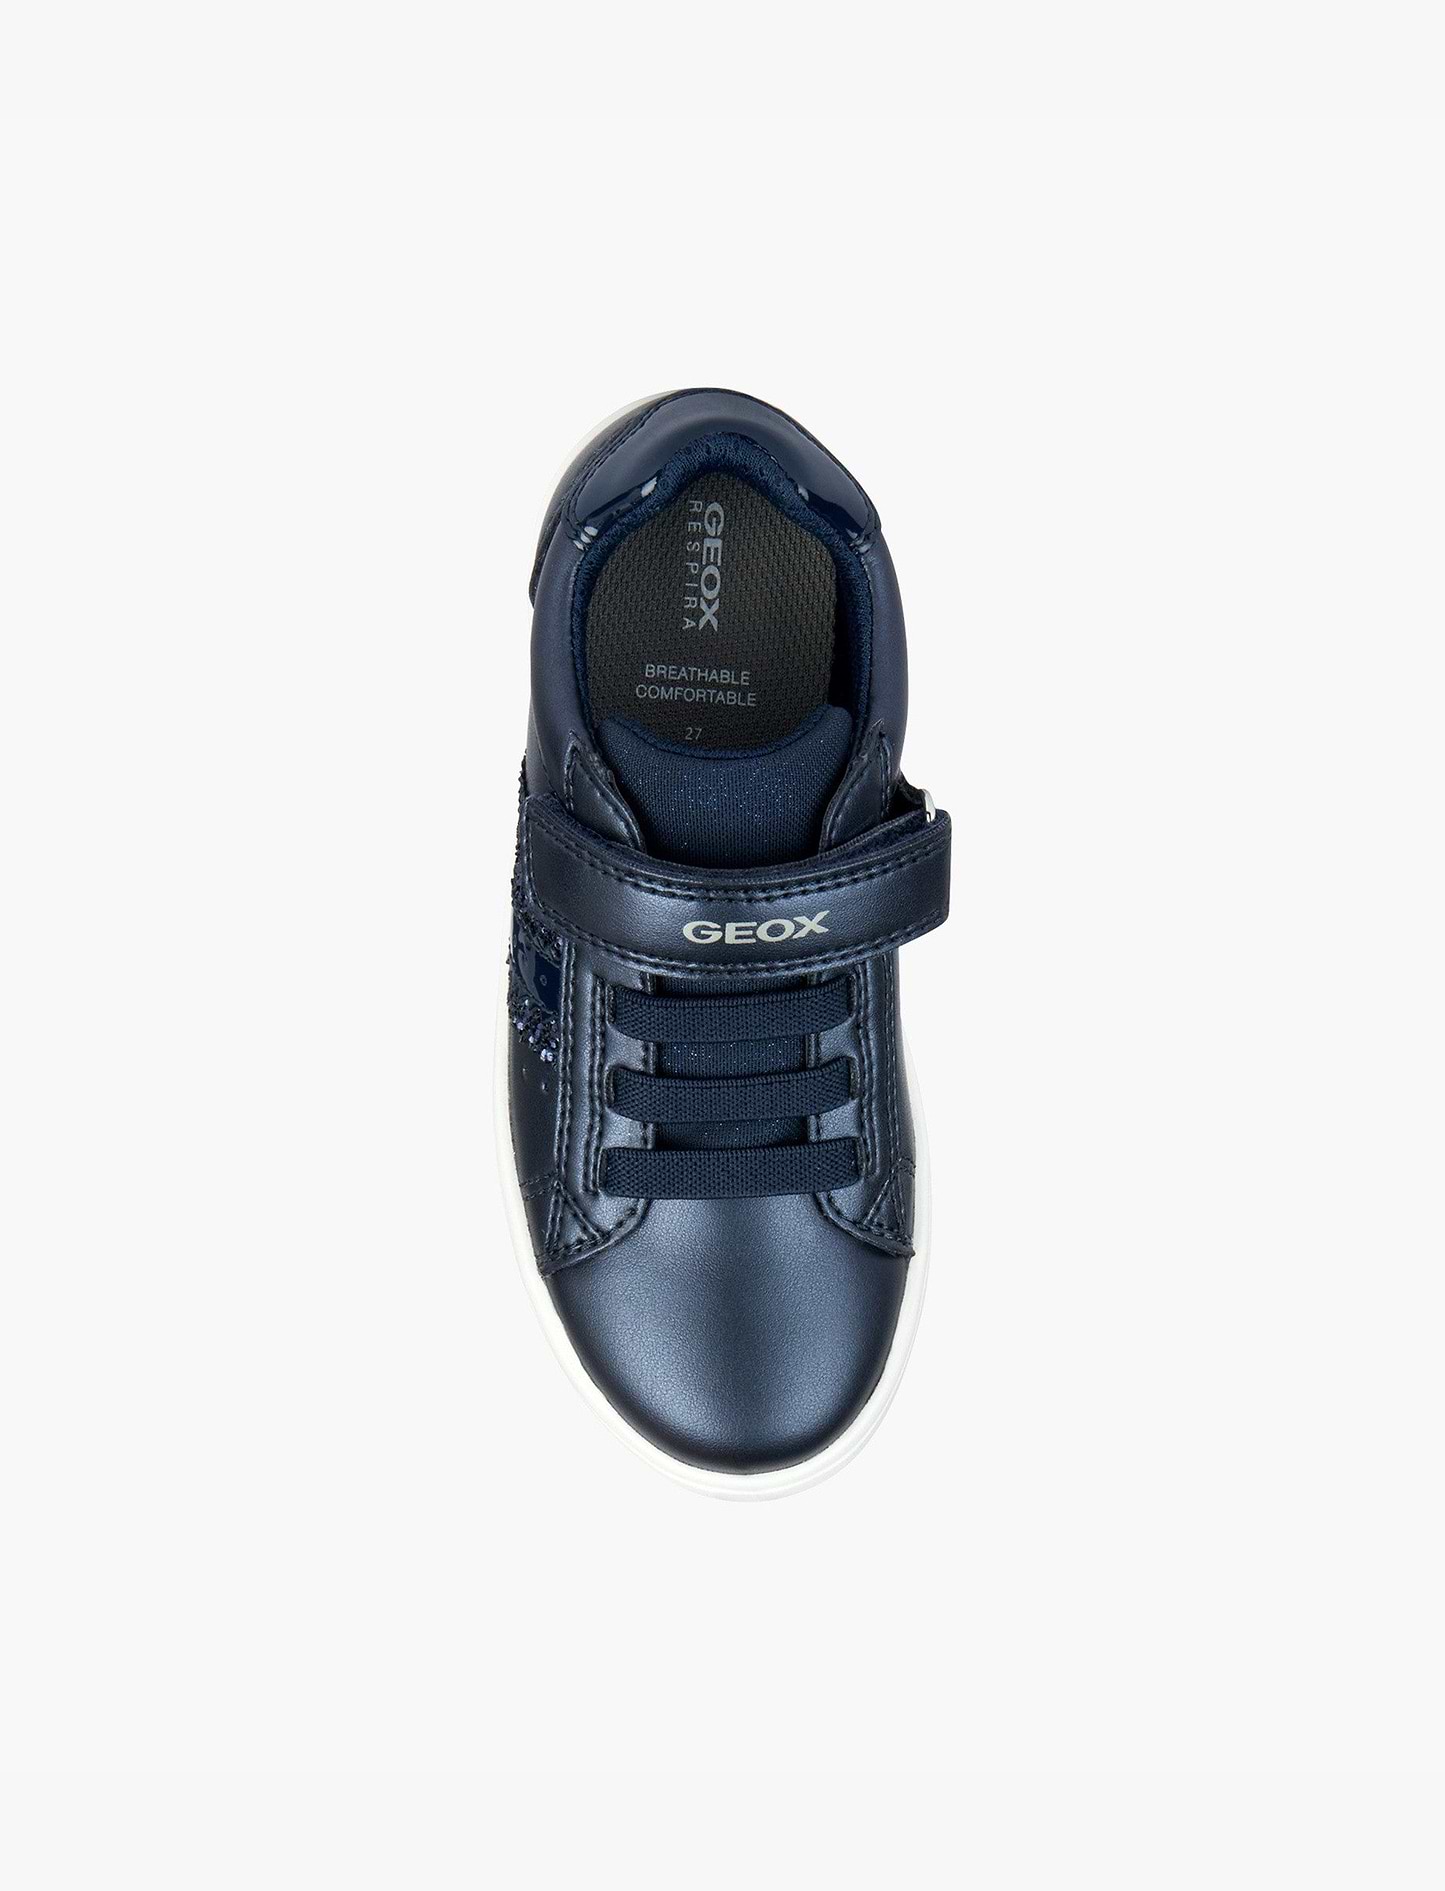 Geox J Djrock Girl J354ME - נעלי סניקרס ג'אוקוס לבנות בצבע נייבי מידות קטנות